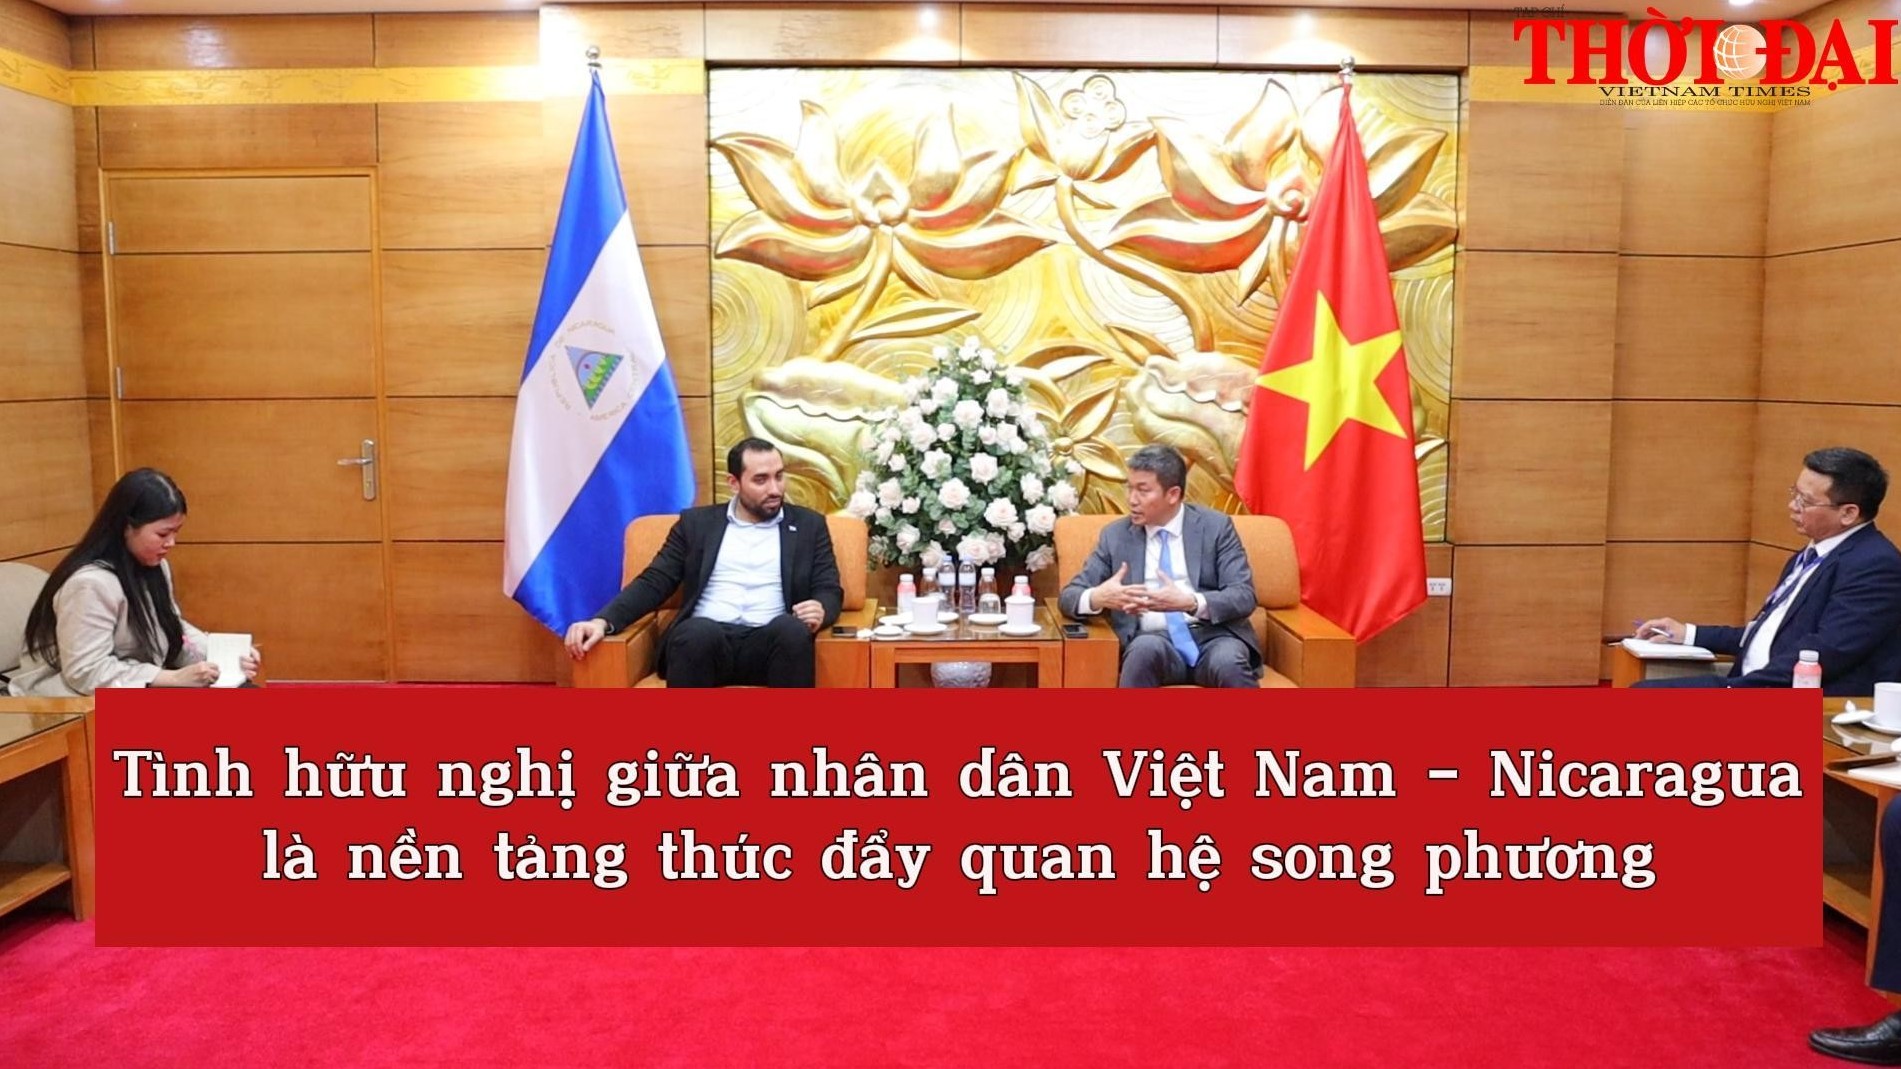 [Video] Tình hữu nghị giữa nhân dân Việt Nam – Nicaragua là nền tảng thúc đẩy quan hệ song phương